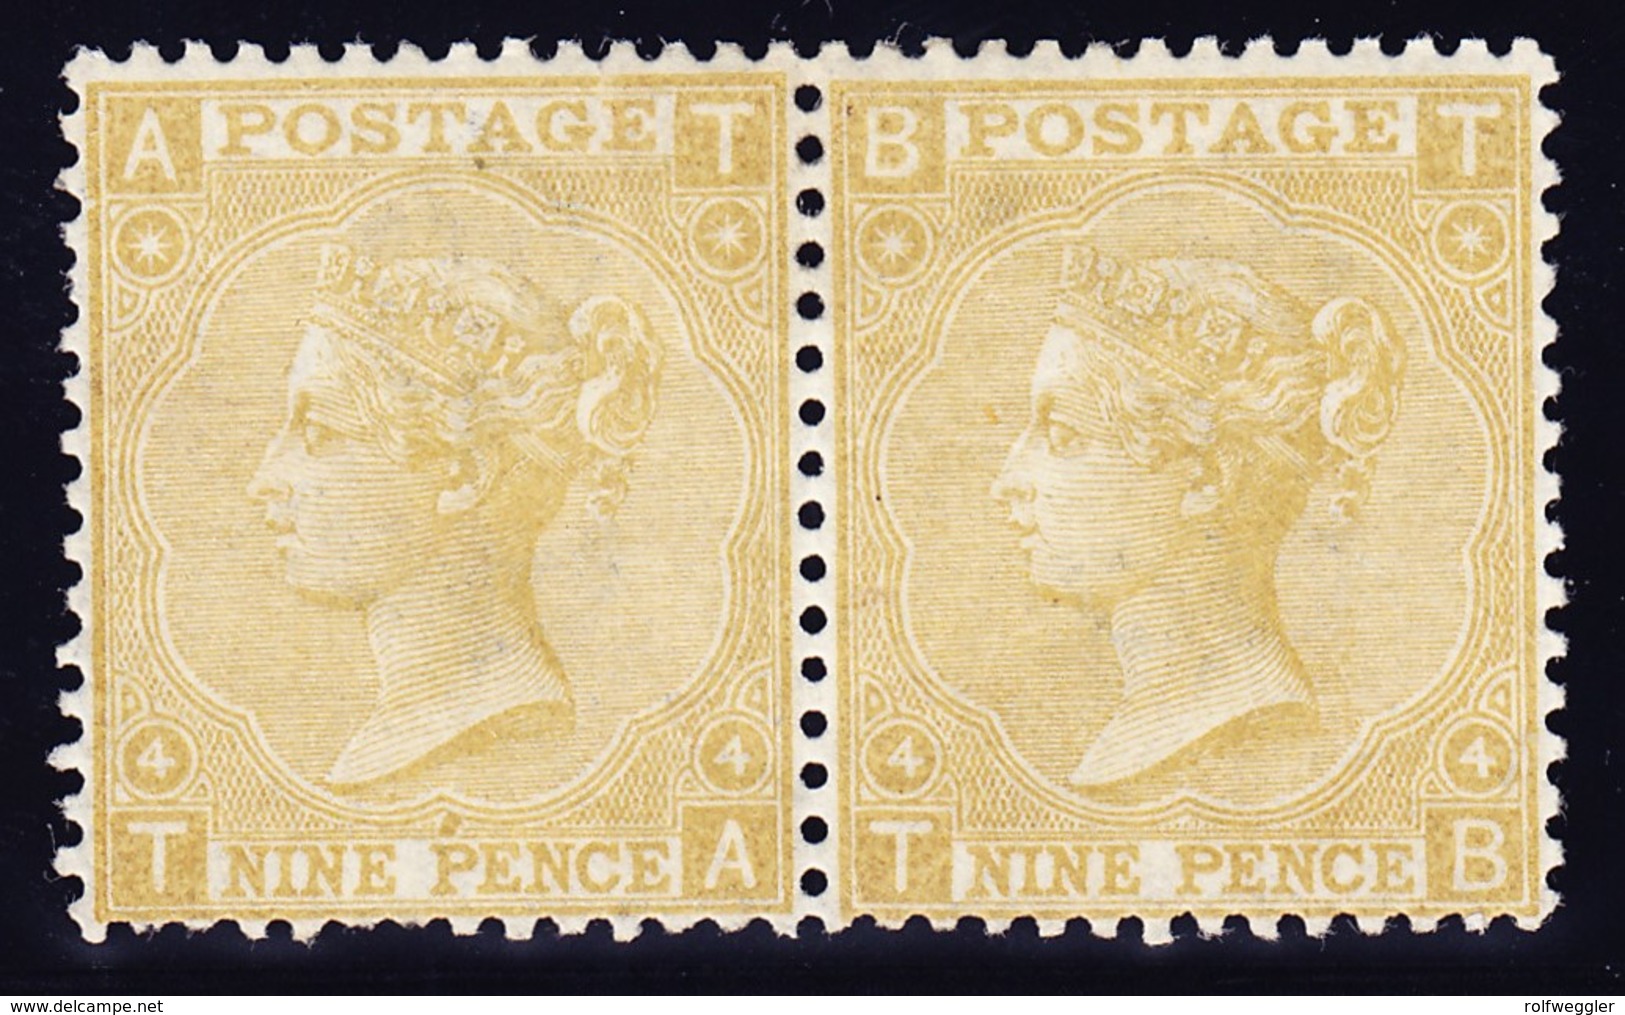 1867 9 Pence Oliv Platten Nr. 4; Ungebrauchtes Paar; Linke Marke Drei Kurze Zähne; Katalog über 4800 Pfund; SG Nr. 110 - Ungebraucht